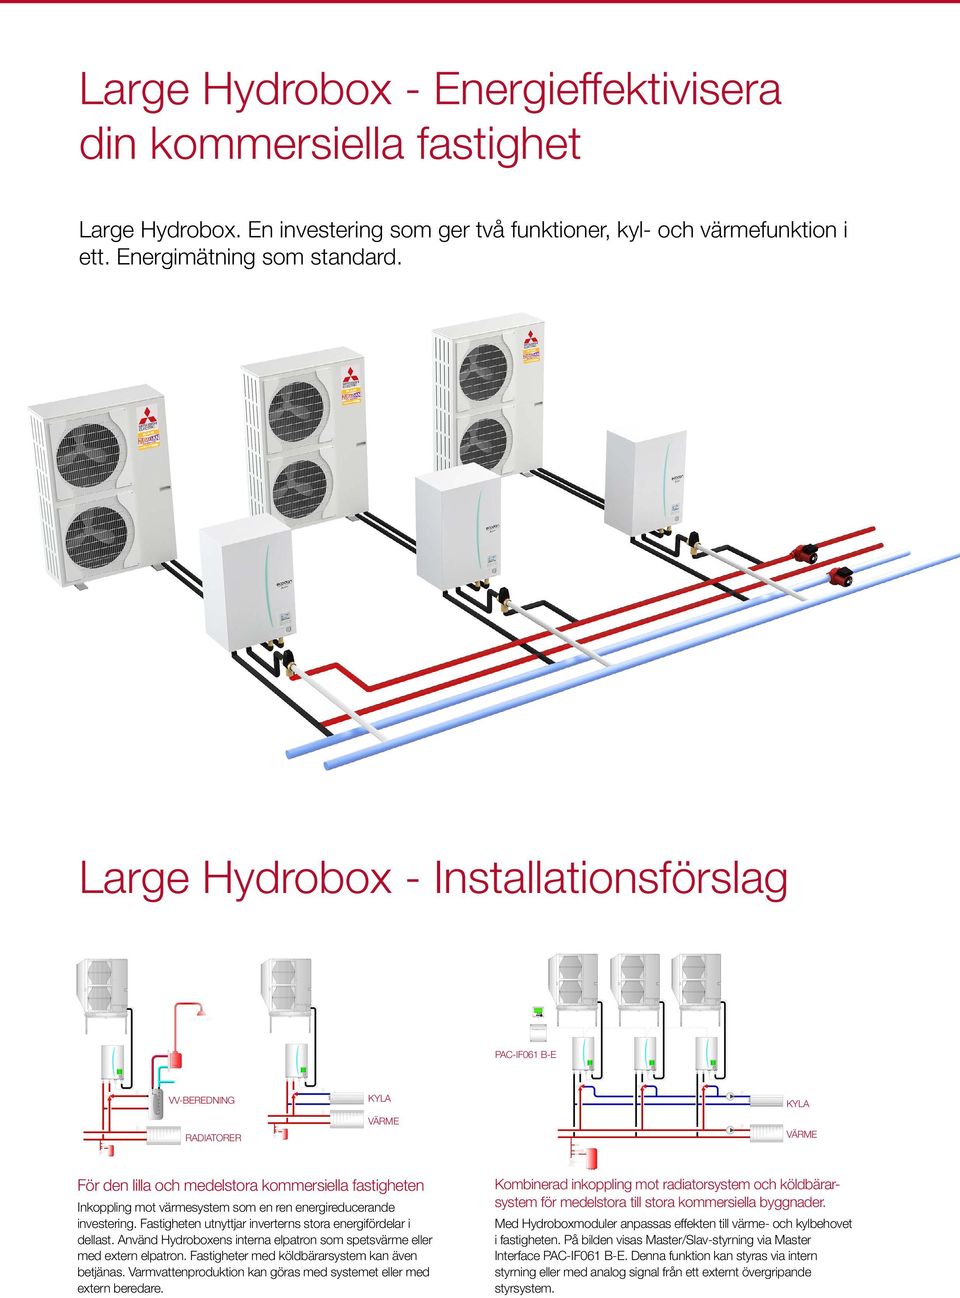 energireducerande investering. Fastigheten utnyttjar inverterns stora energifördelar i dellast. Använd Hydroboxens interna elpatron som spetsvärme eller med extern elpatron.